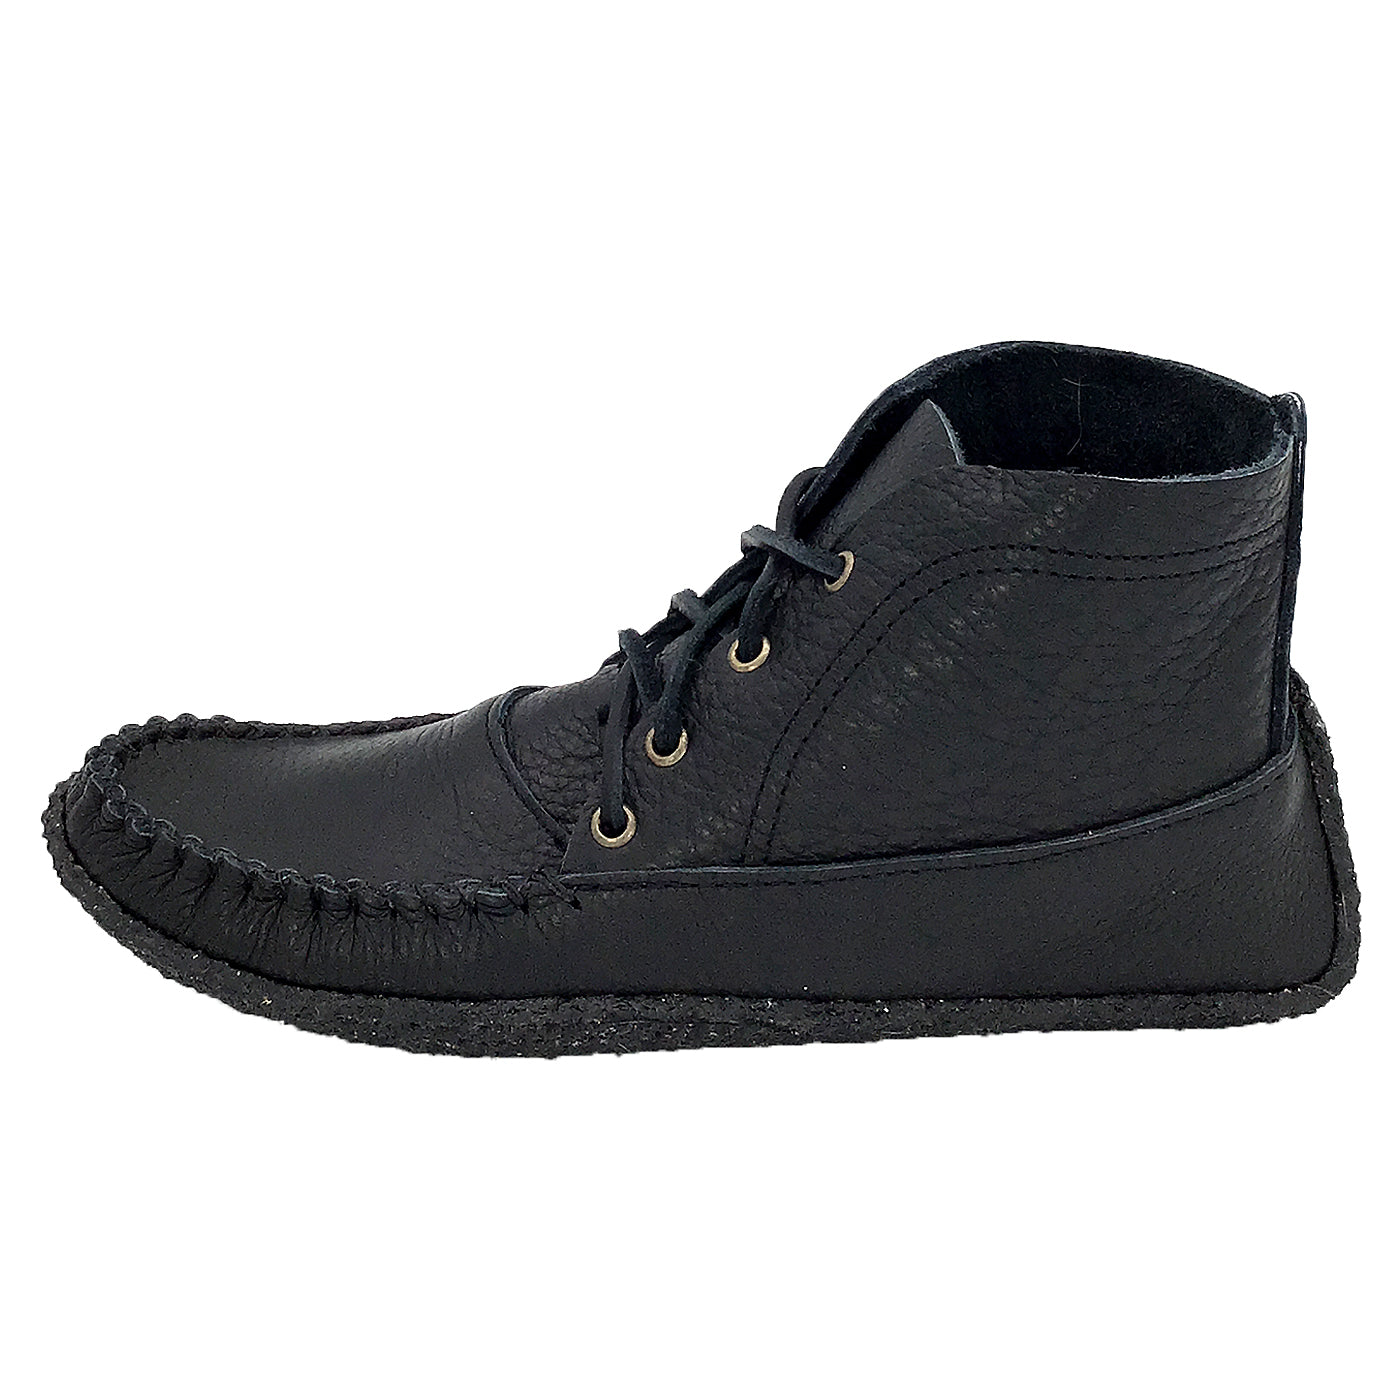 Mens Black Moccasin Boots Online | bellvalefarms.com